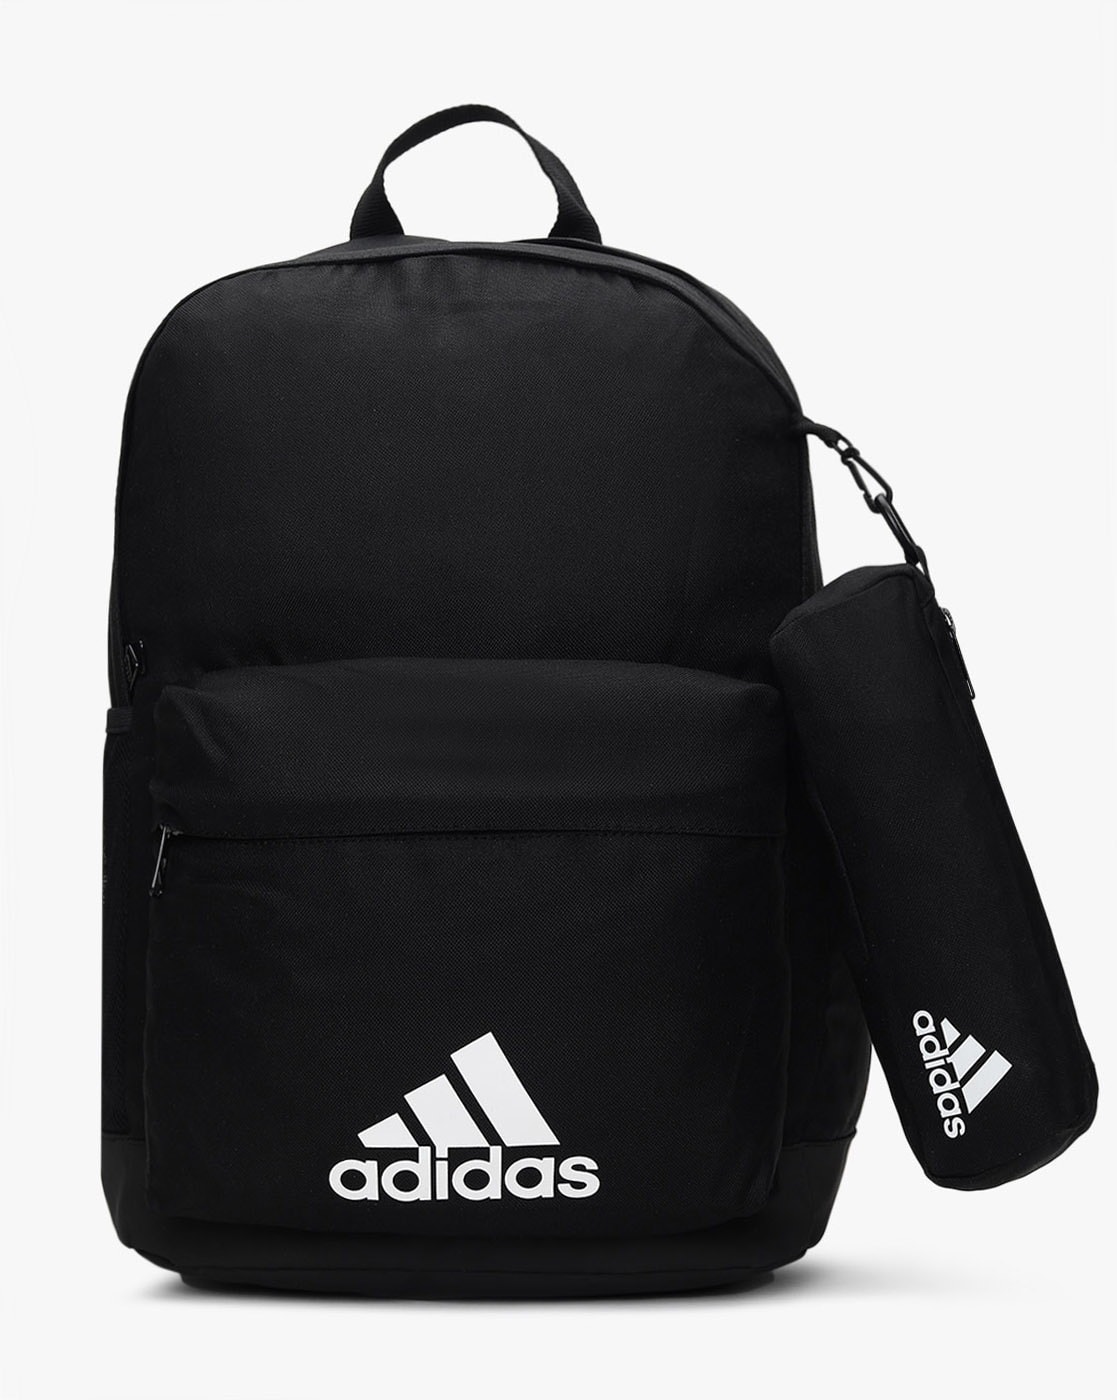 Adidas Weight Sensor Backpacks for Men | Mercari